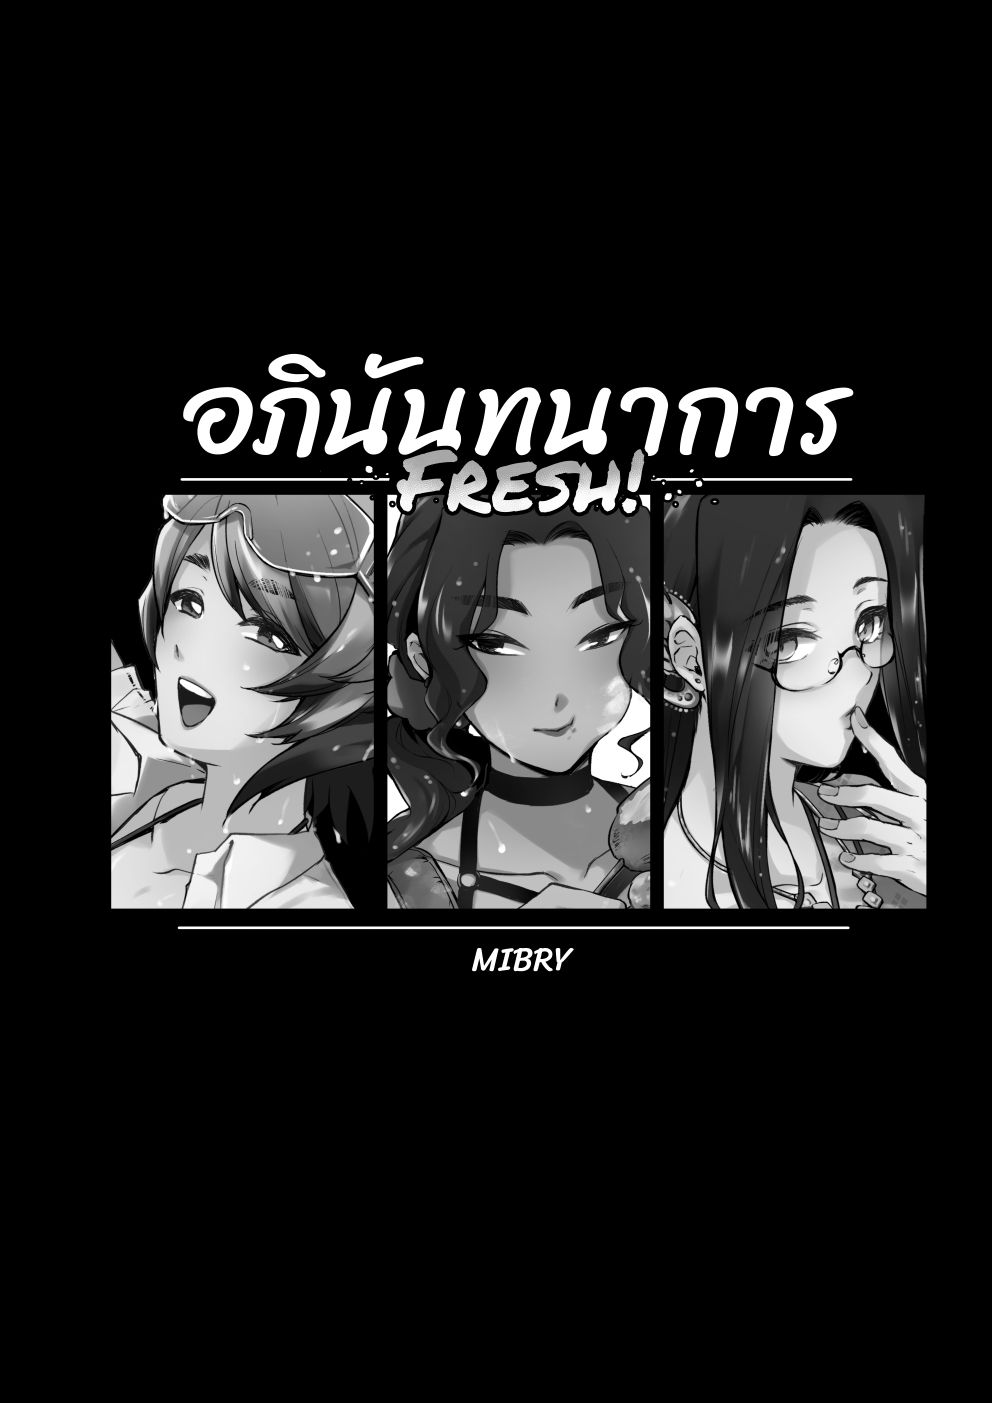 [Pixiv] MIBRY☆ (2367541) [Pixiv] MIBRY☆ (2367541) 130